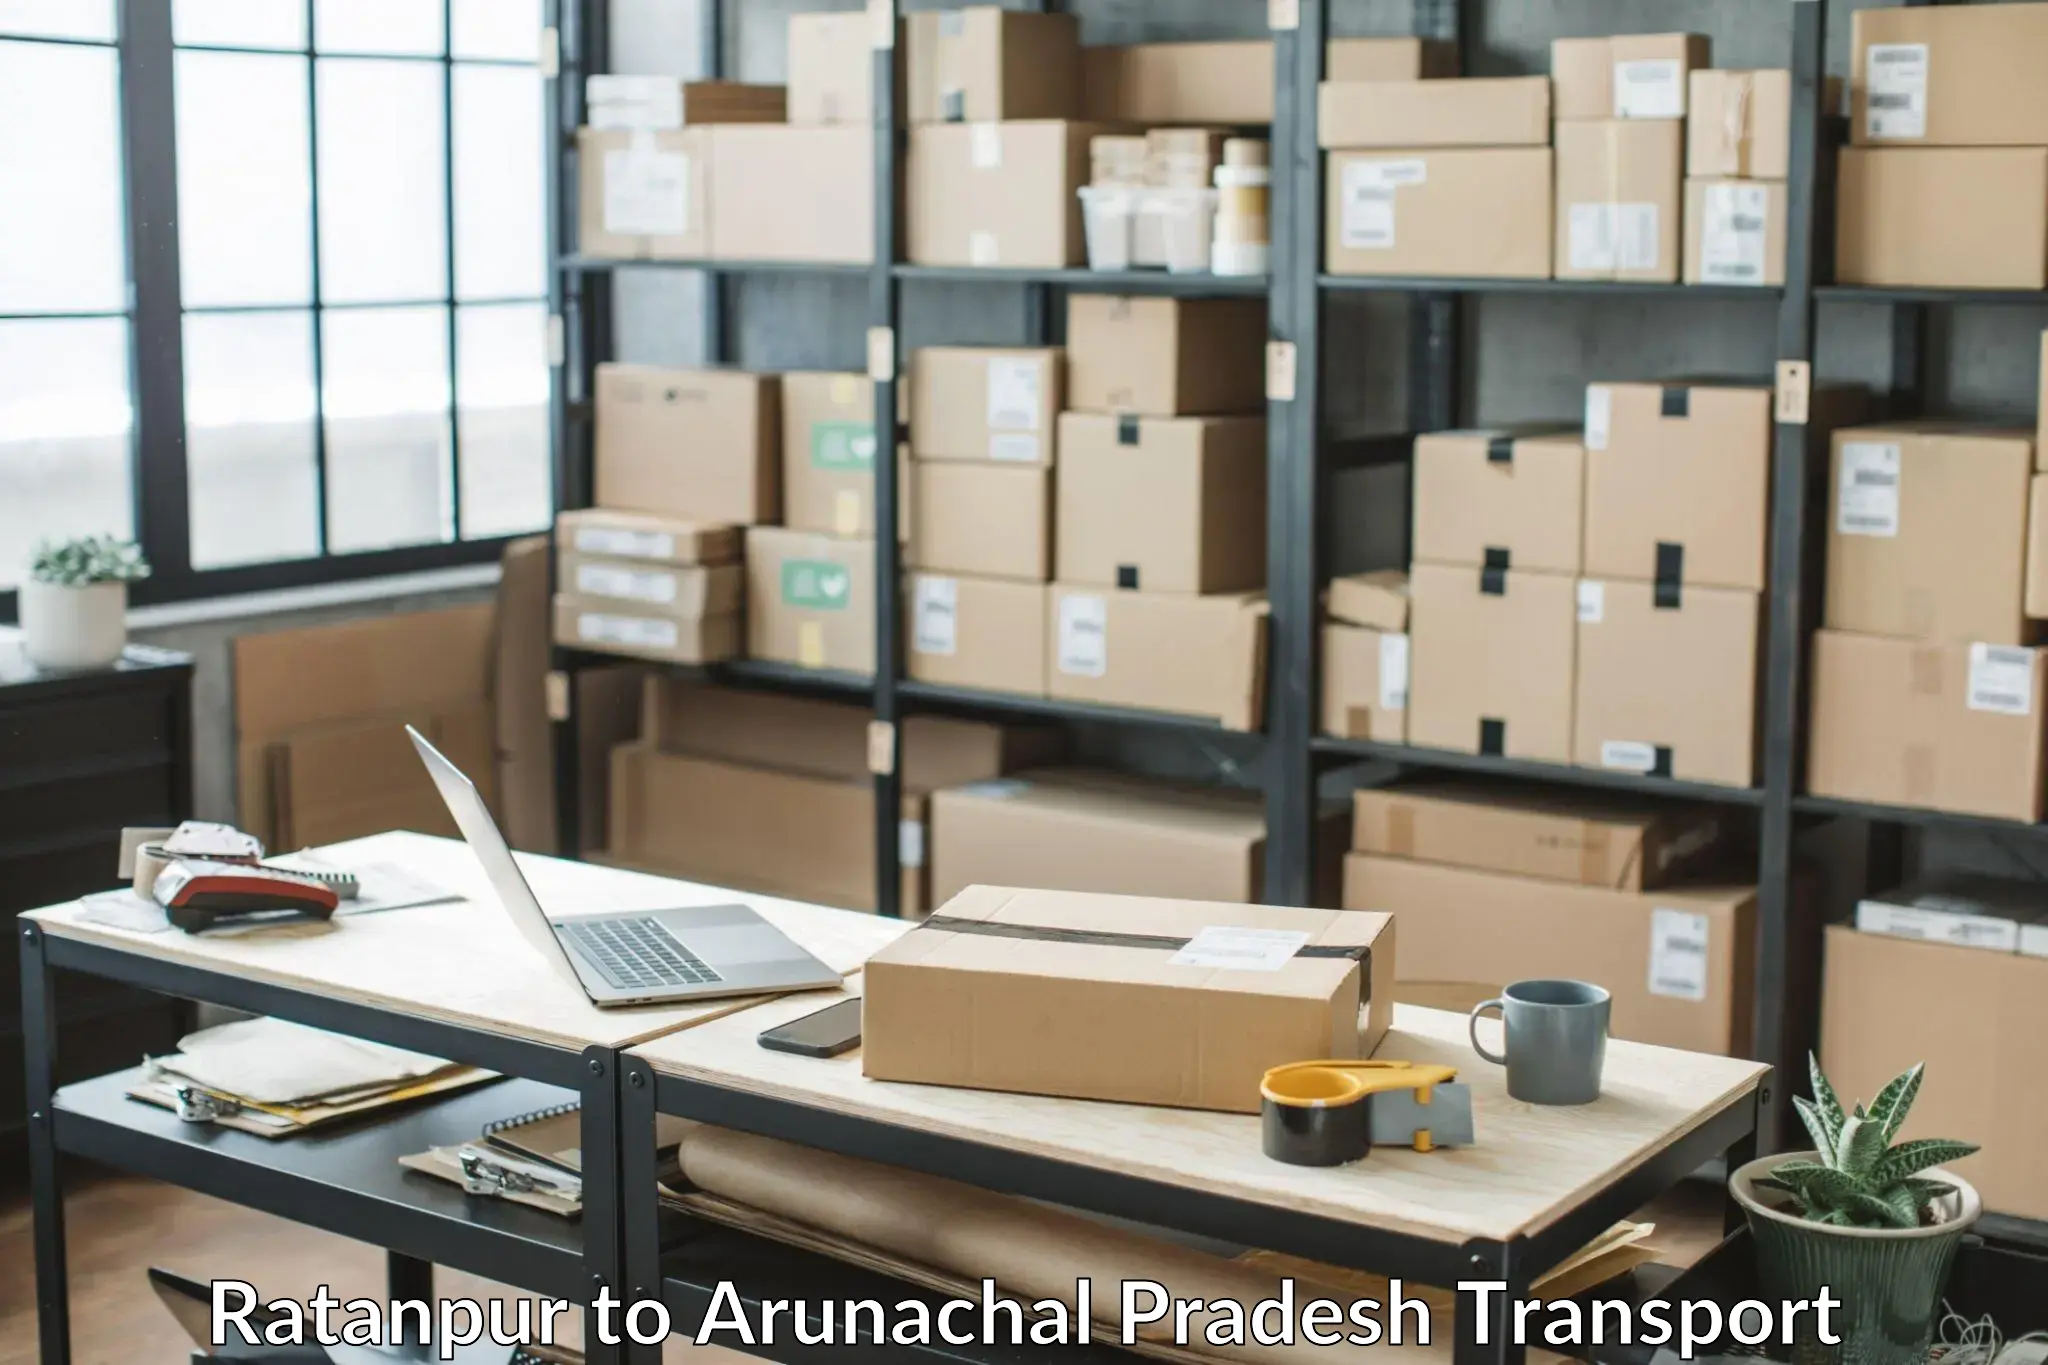 Parcel transport services Ratanpur to Arunachal Pradesh